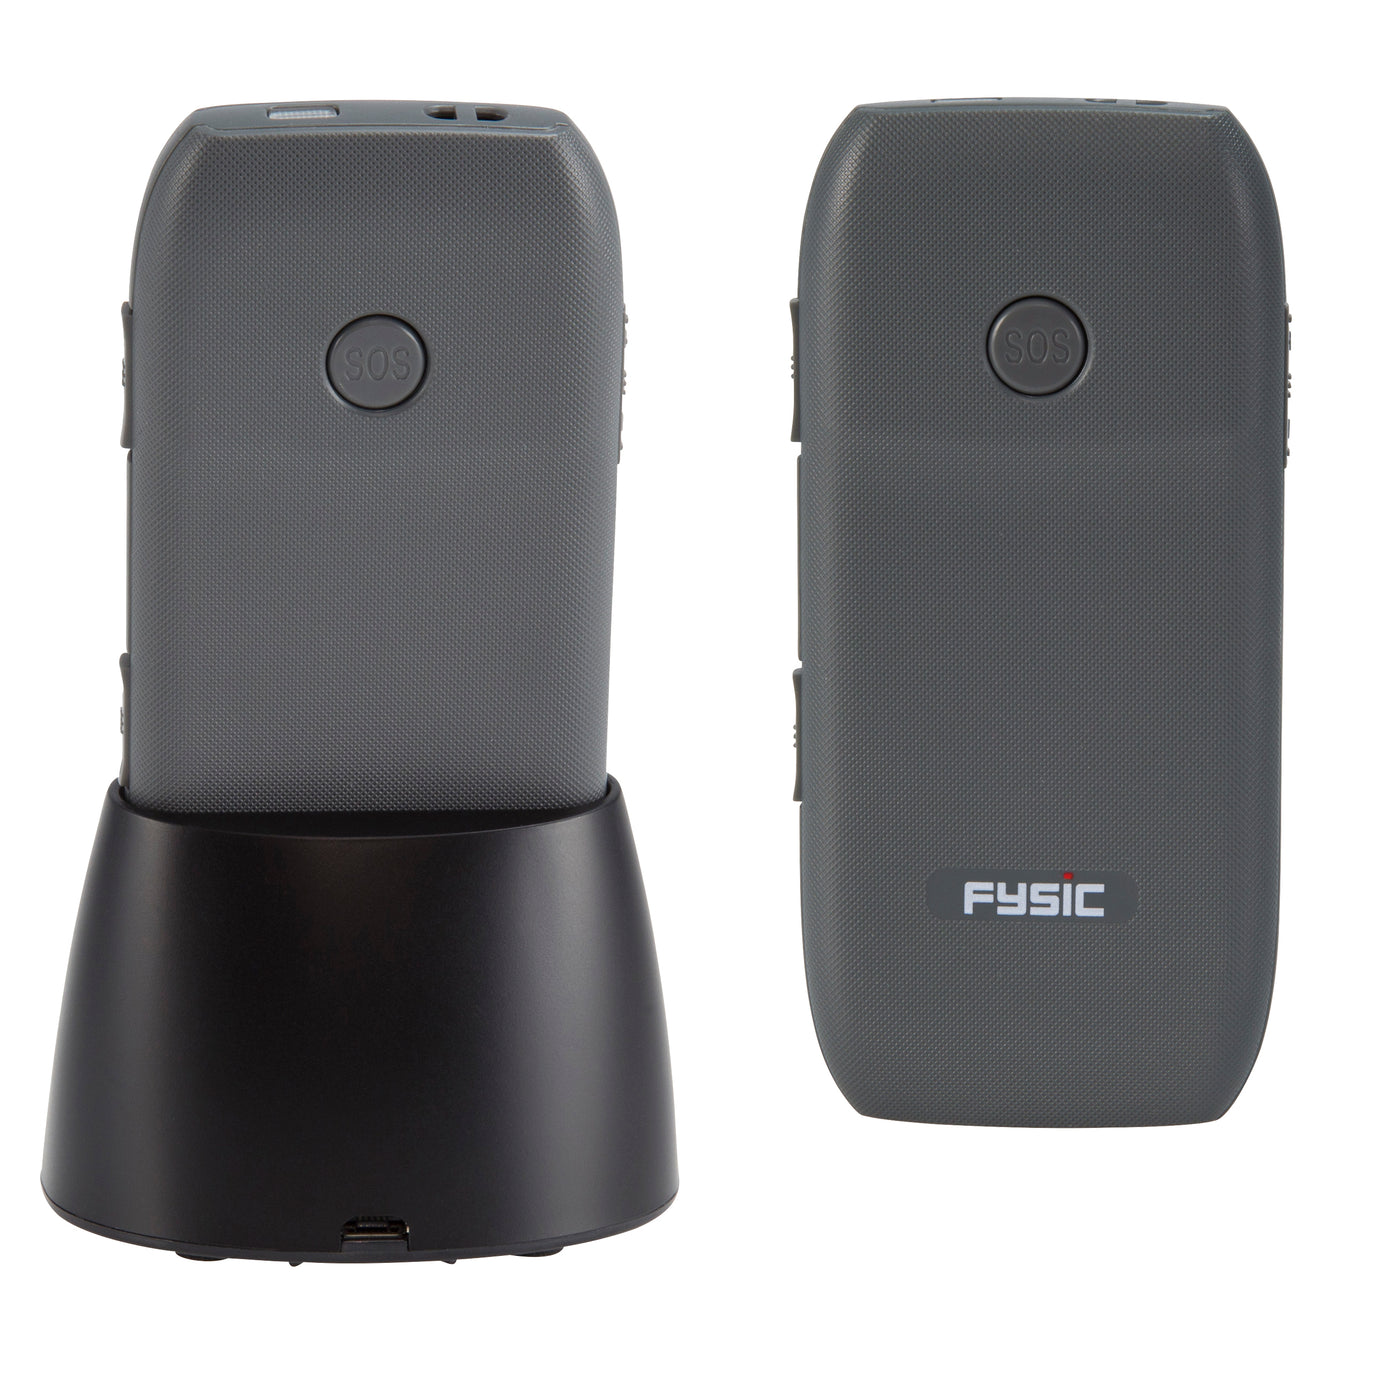 Fysic FM-7575 - Eenvoudige mobiele telefoon voor senioren met SOS paniekknop, zwart